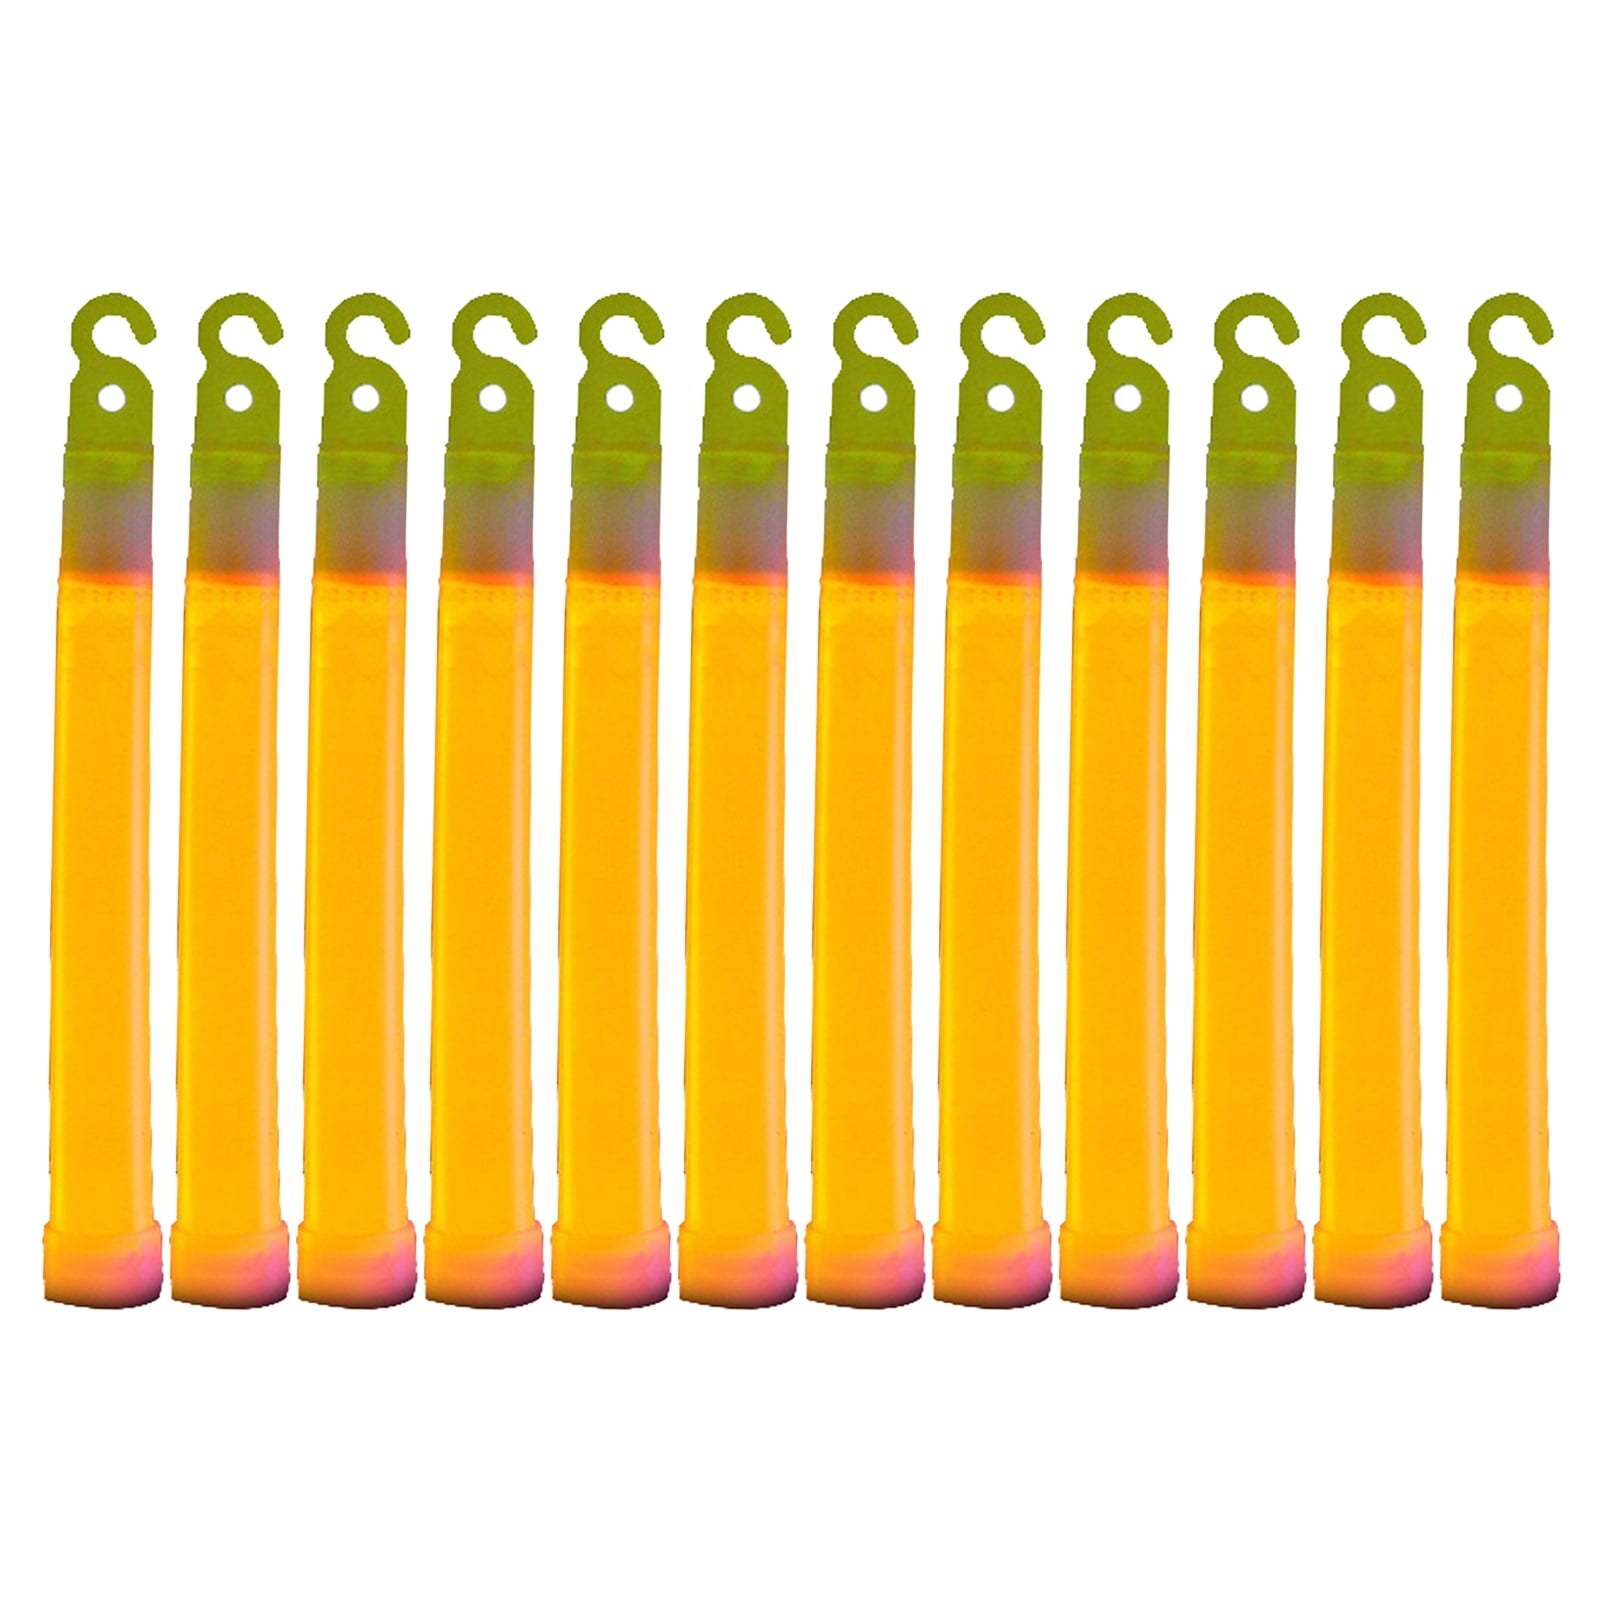 Multi-Use Glow Stick